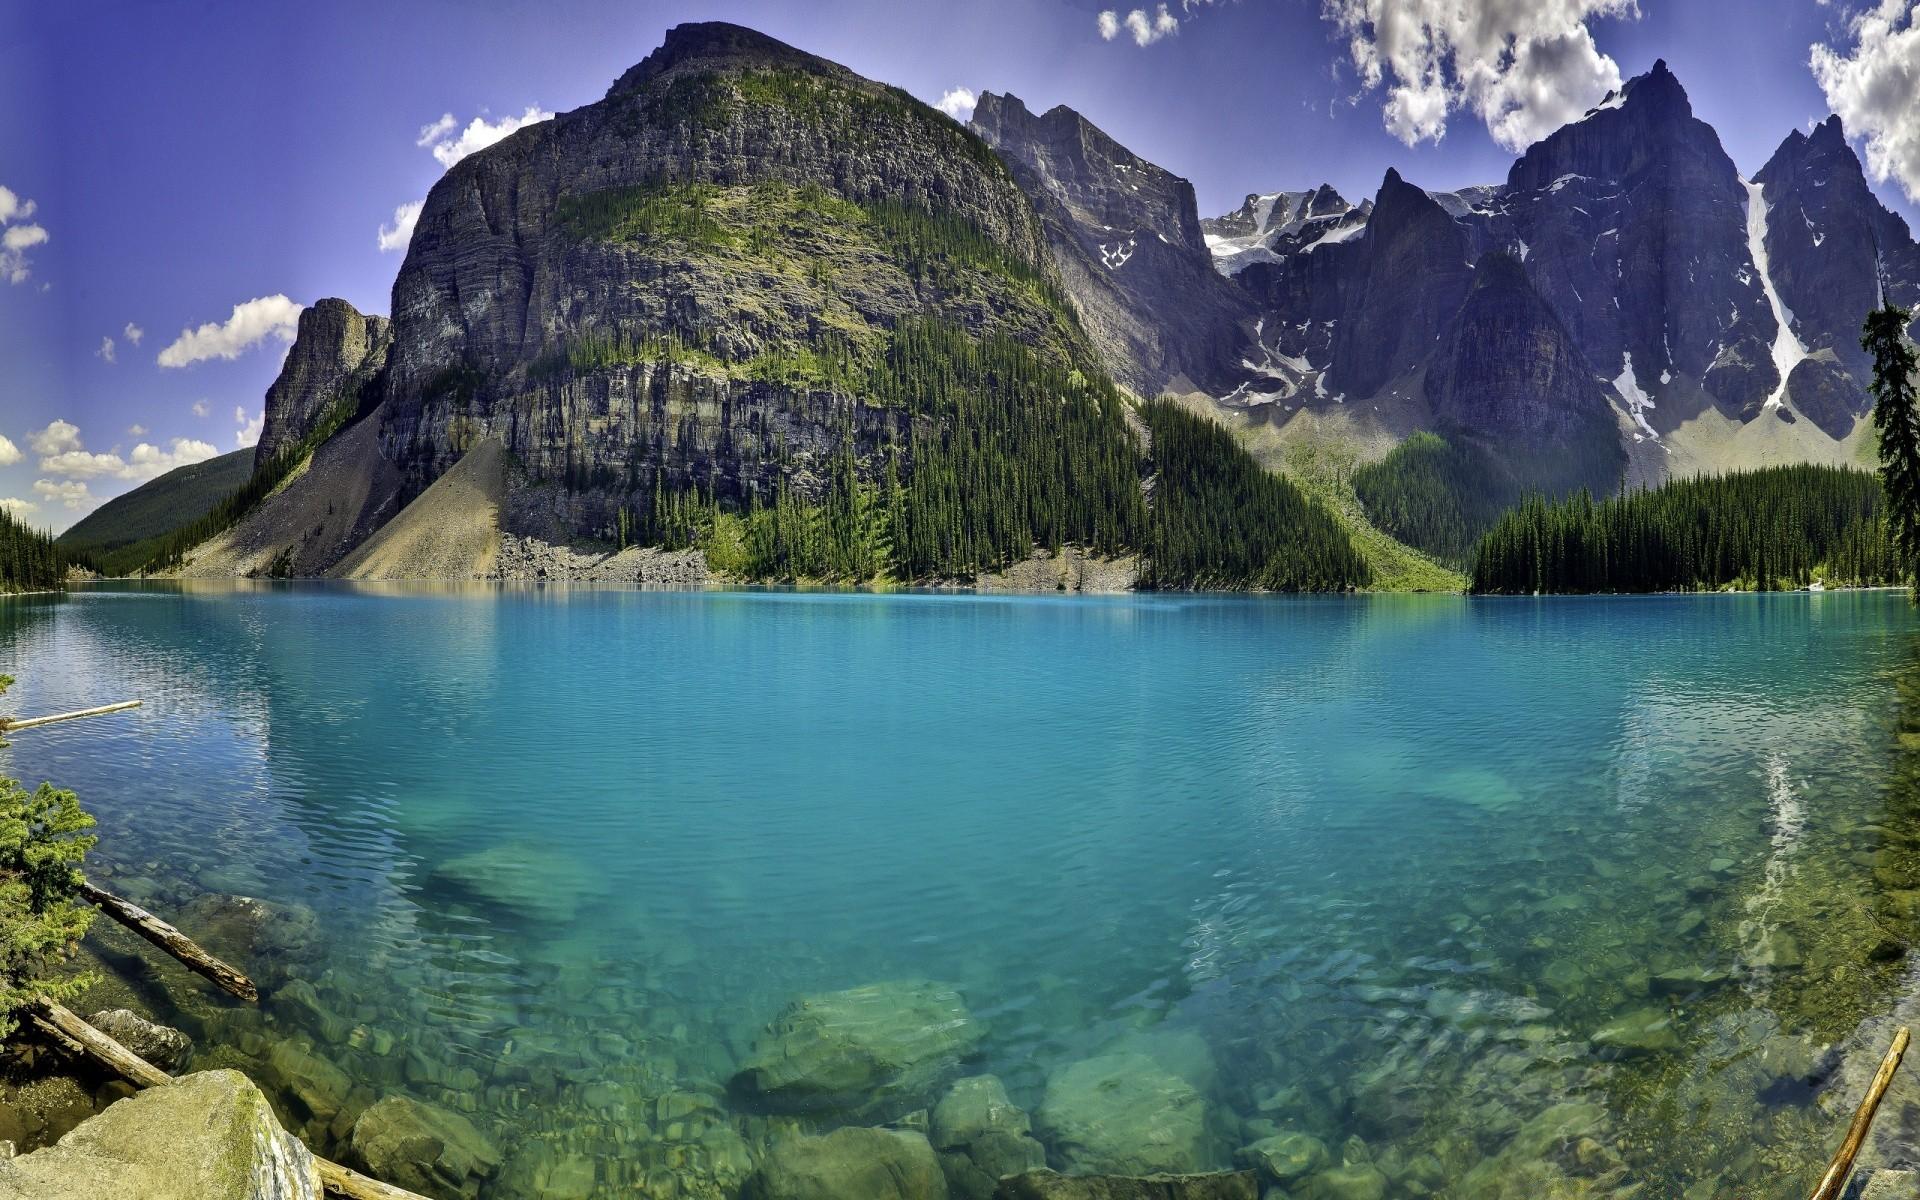 Beautiful Moraine Lake in Banff National Park, Alberta, Canada